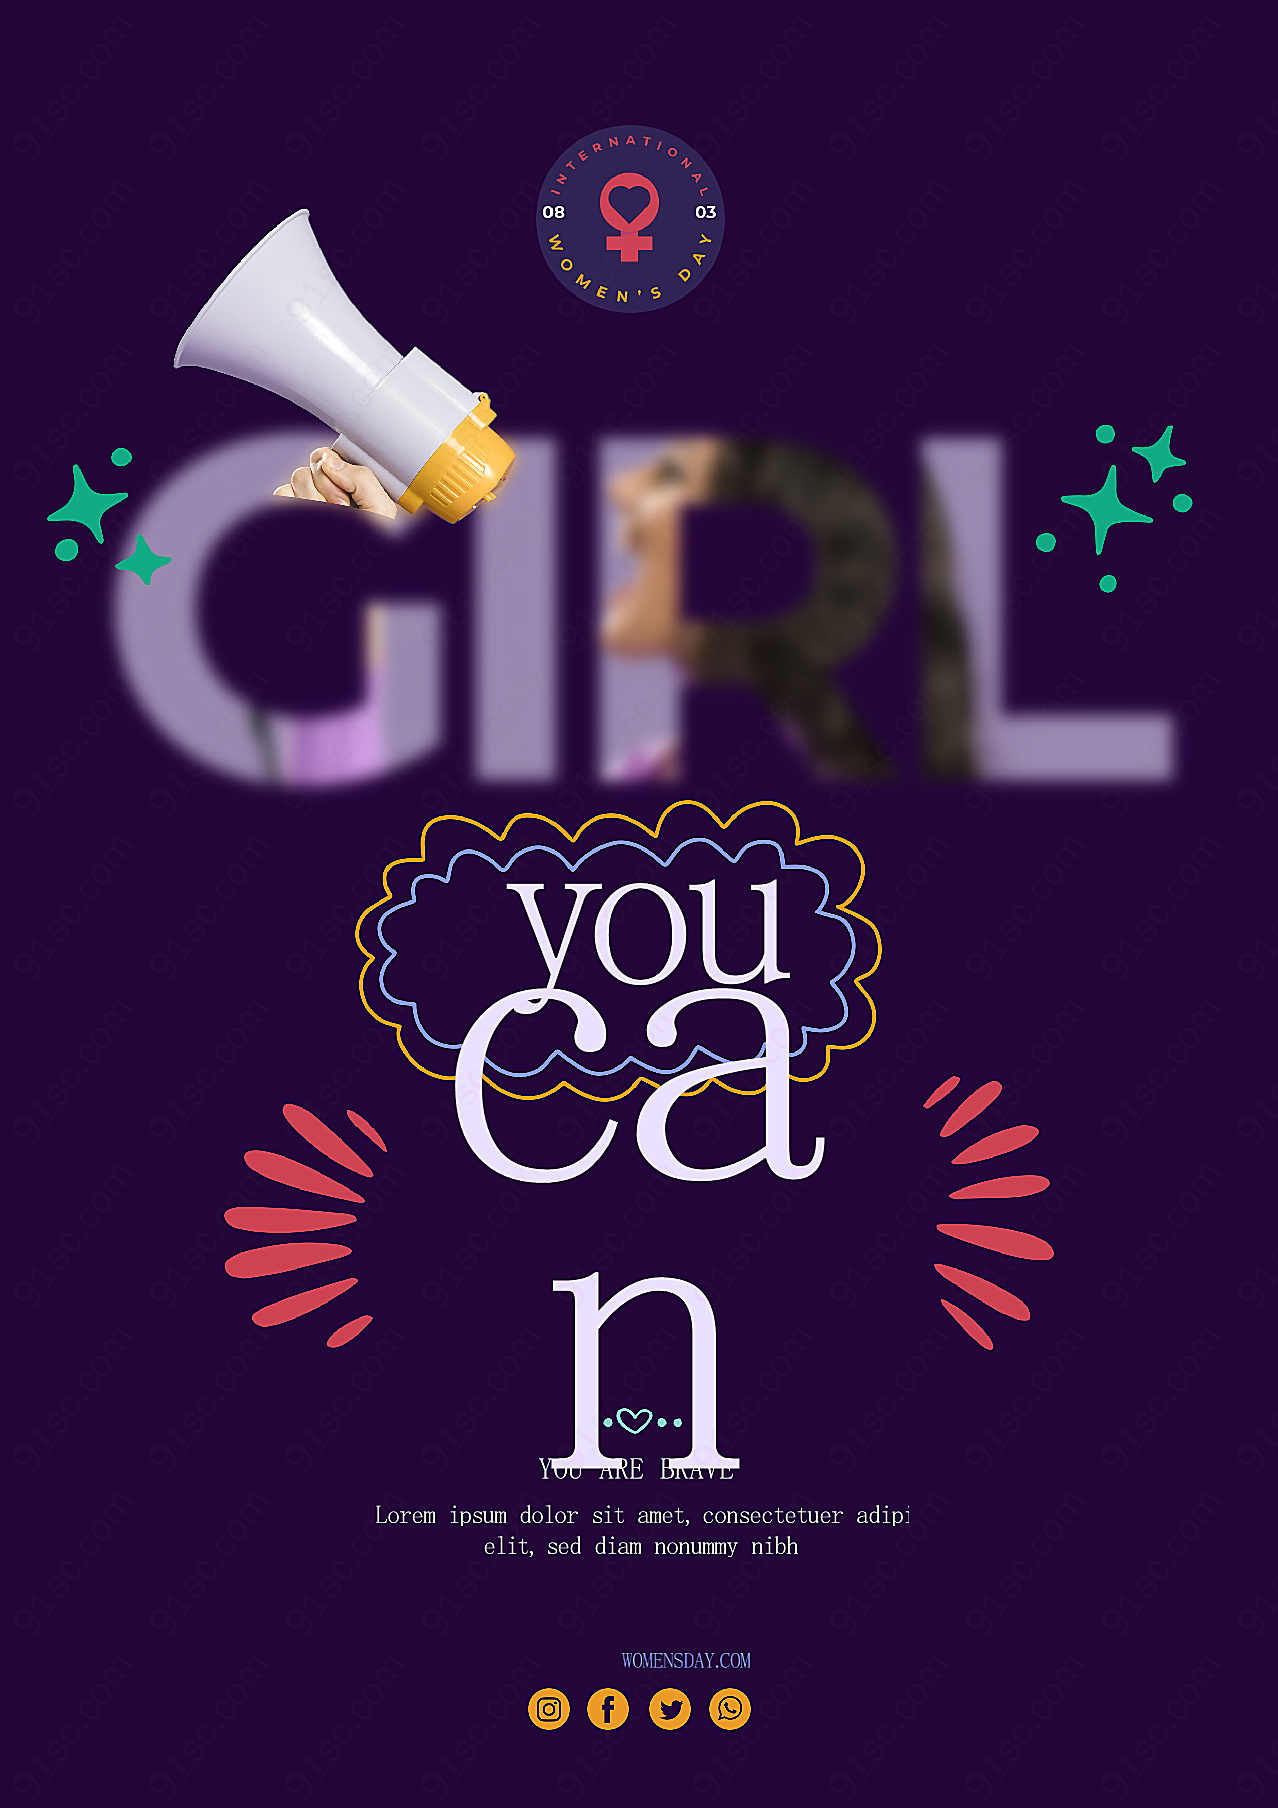 妇女节英文文案海报设计节日庆典